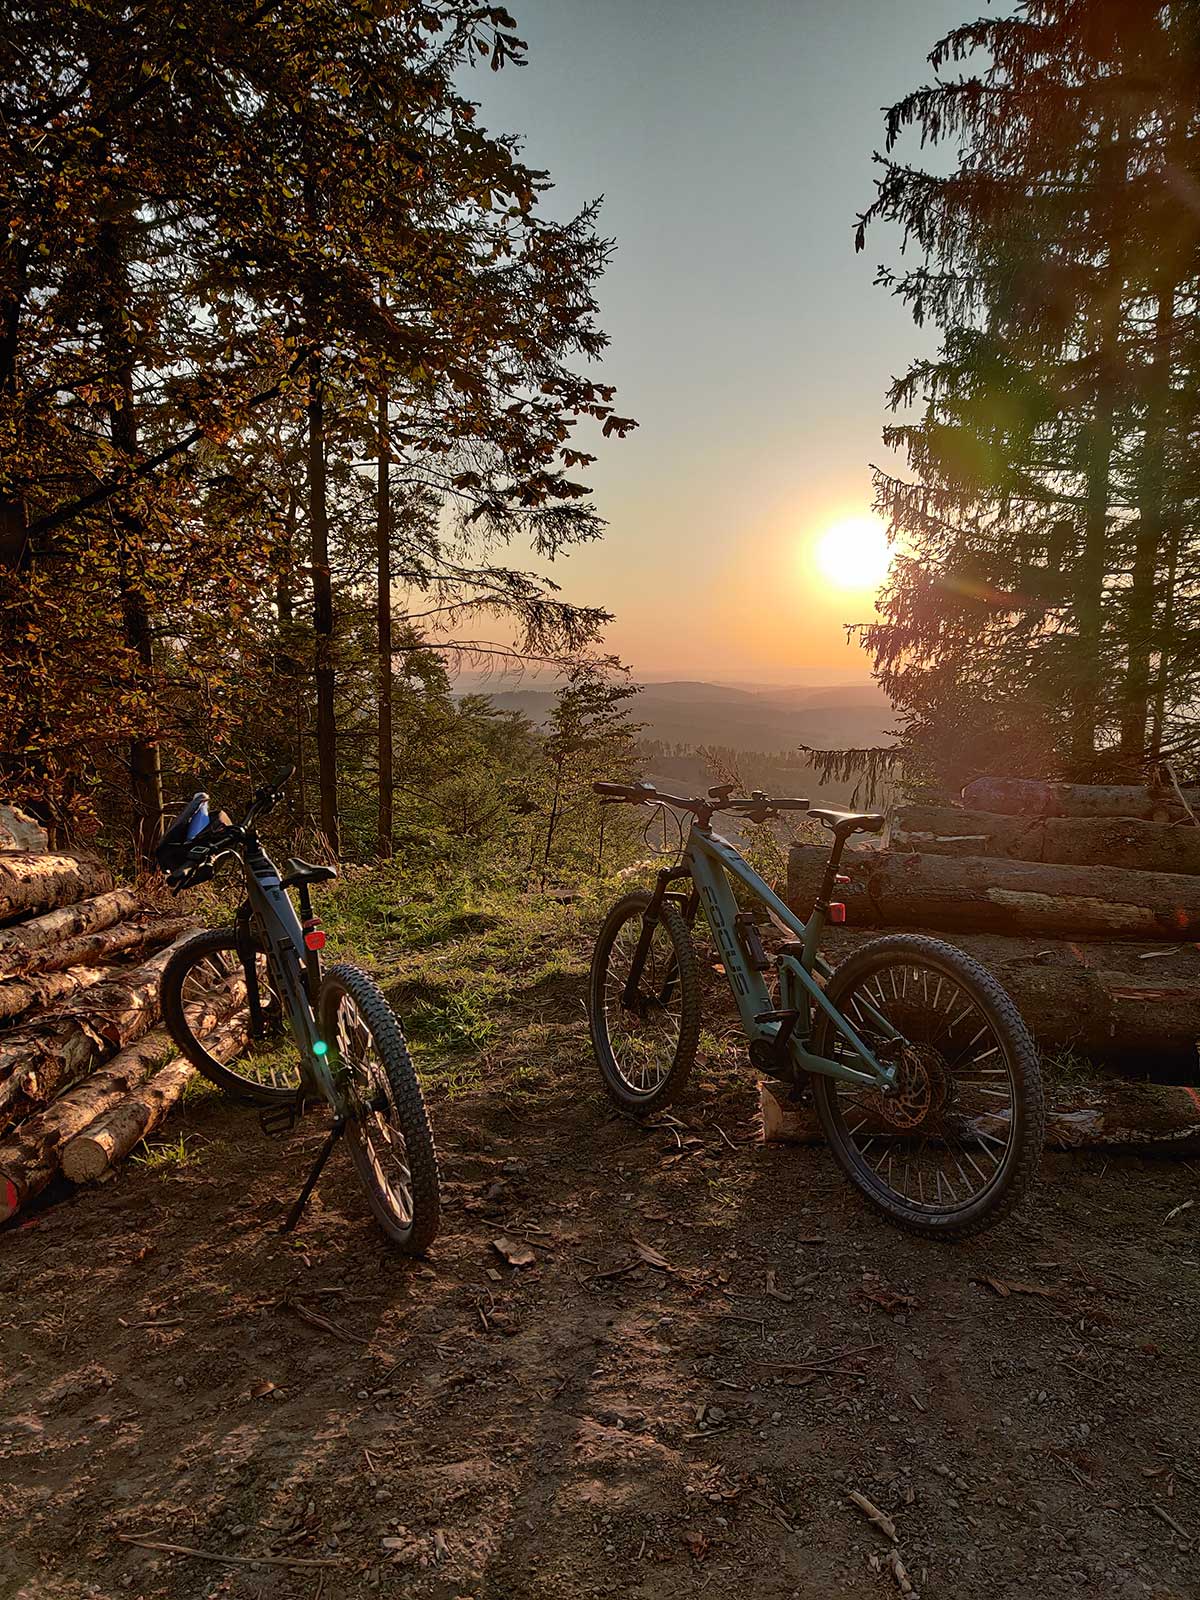 JobRad Moment von Daniel mit zwei Bikes auf Waldweg im Hintergrund dunstiger Sonnenuntergang und Aussicht